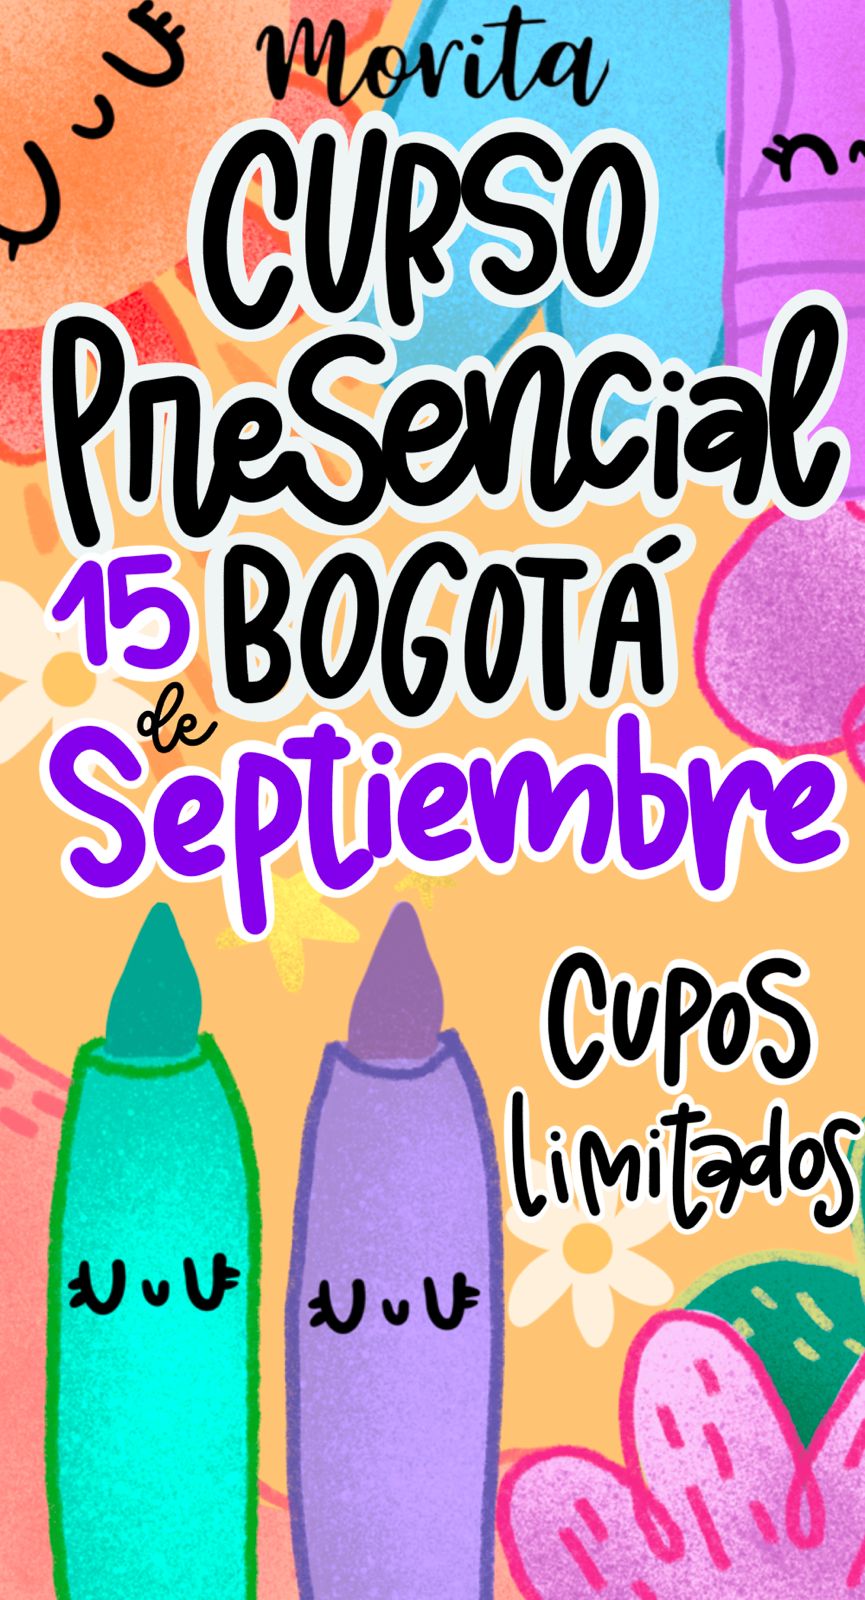 Curso Presencial Bogotá Septiembre